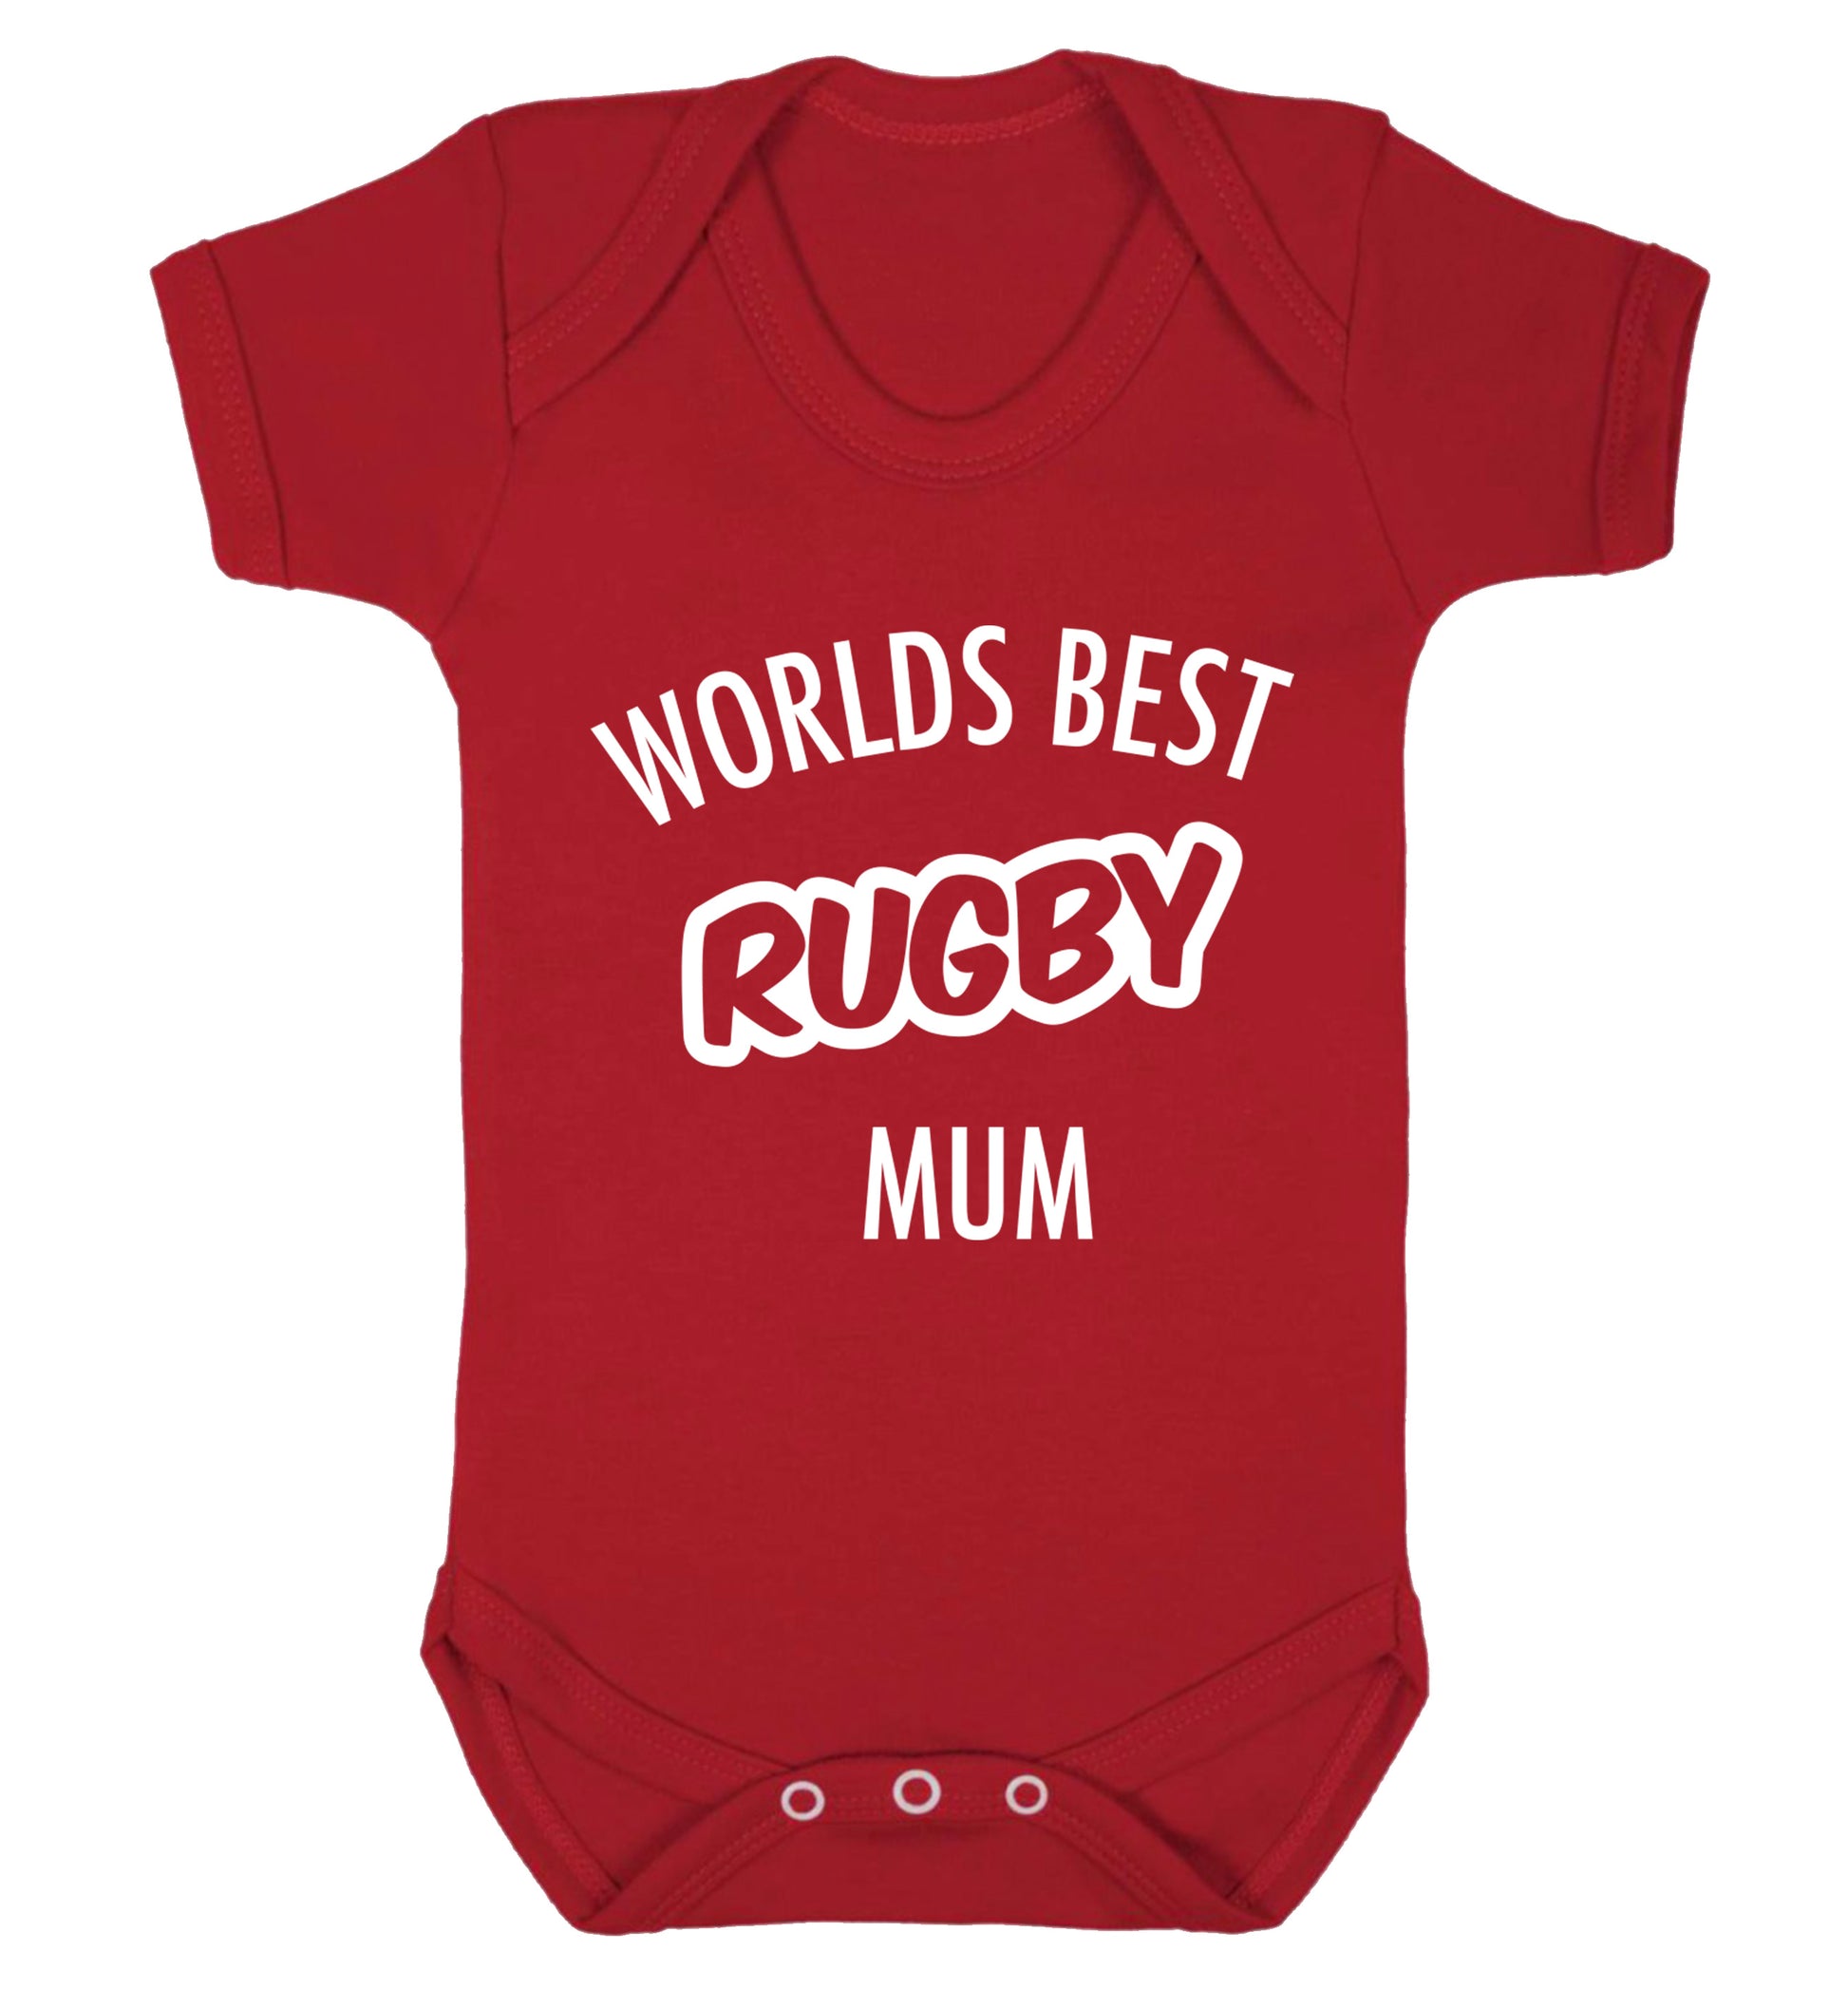 Worlds best rugby mum Baby Vest red 18-24 months